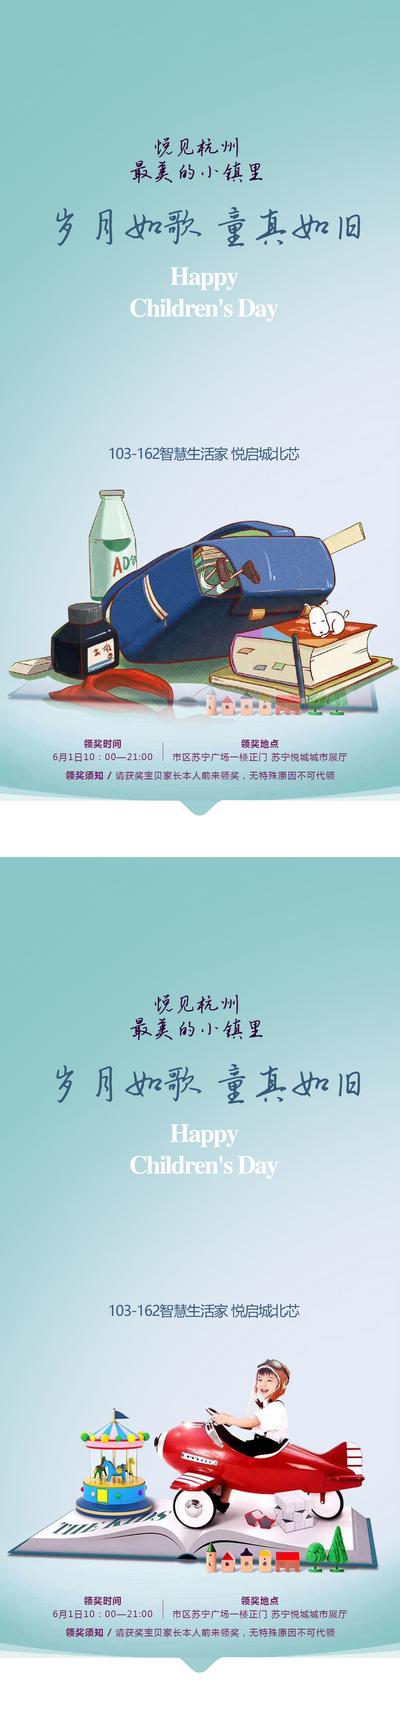 南门网 海报 公历节日 房地产 儿童节 61 书本 书籍 插画